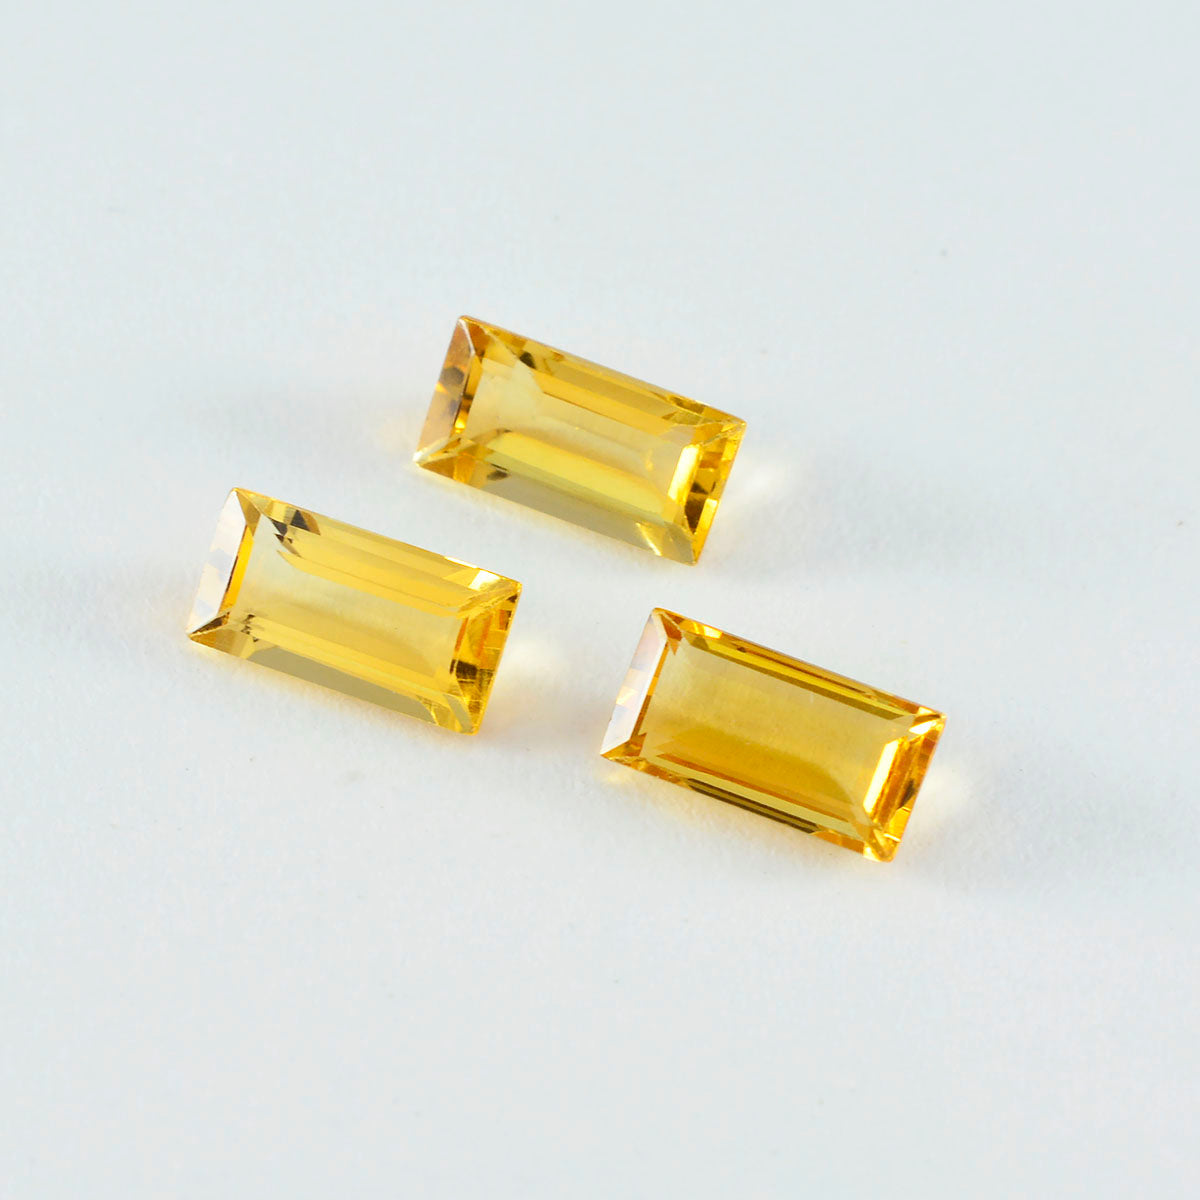 riyogems 1 шт. натуральный желтый цитрин ограненный 4x8 мм драгоценный камень в форме багета превосходного качества